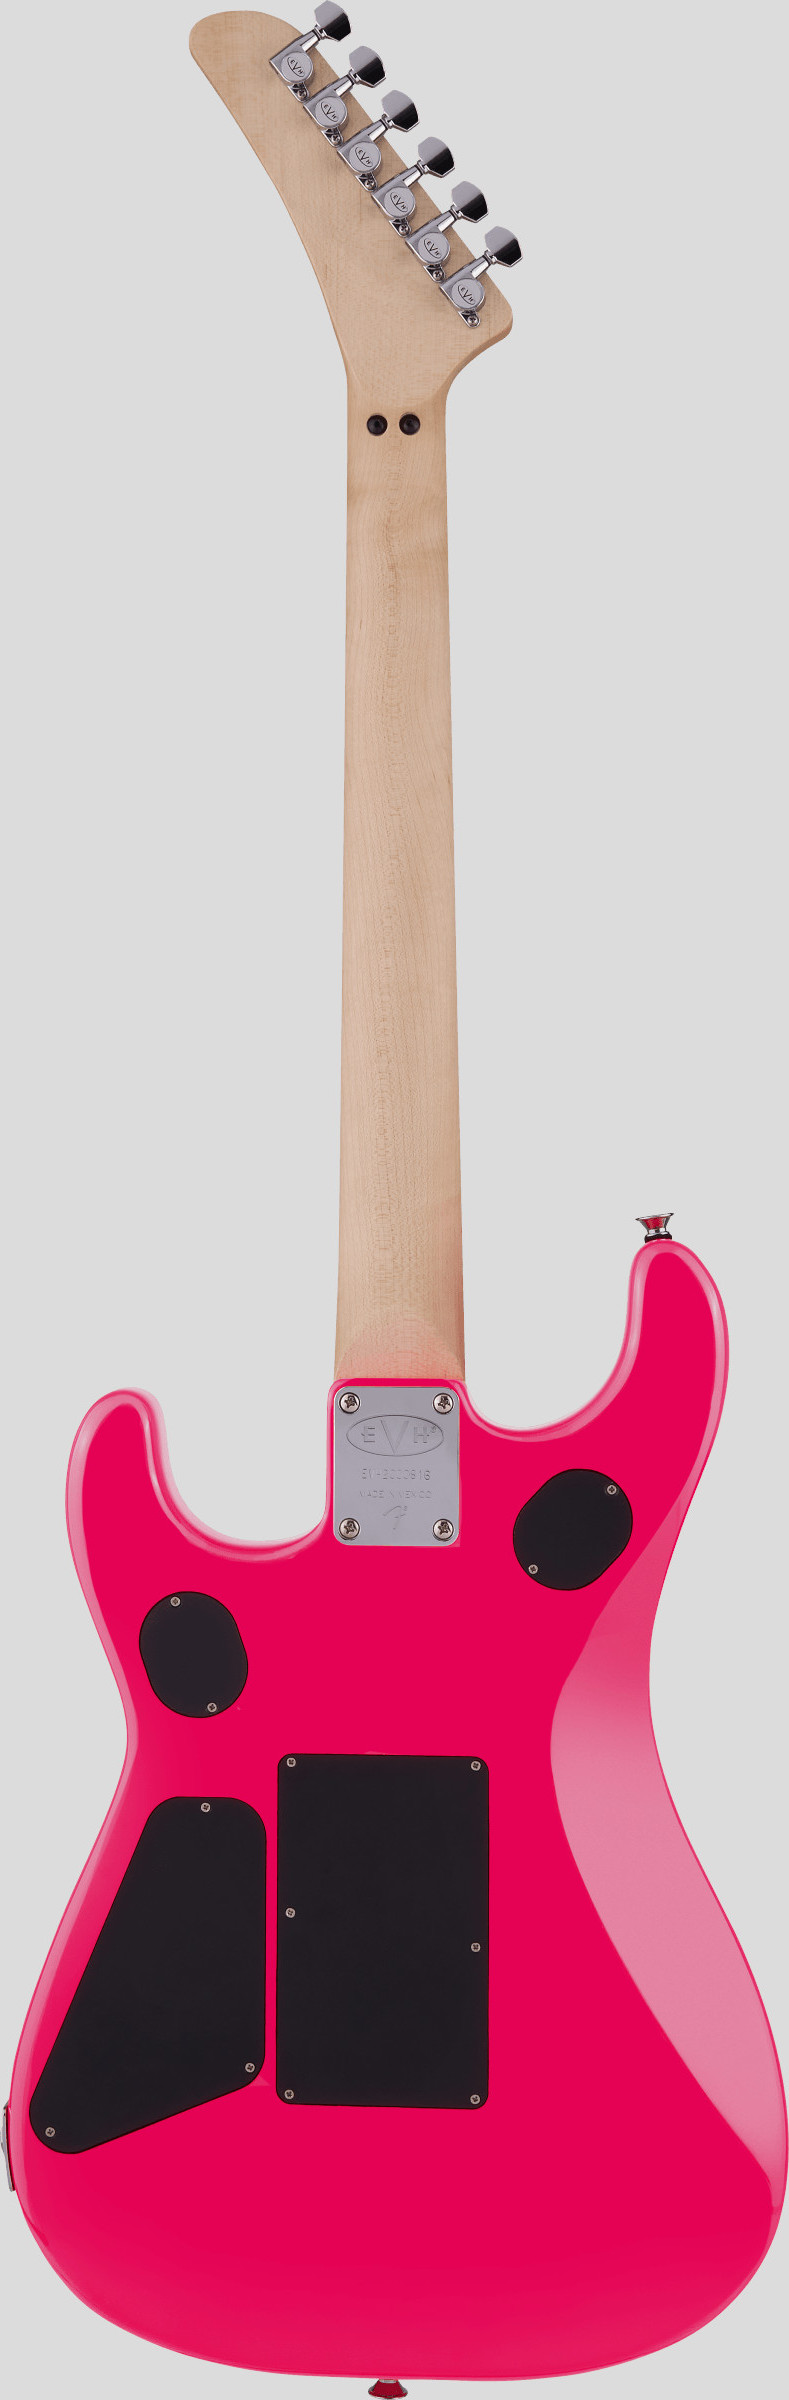 EVH 5150 Standard Maple Fingerboard Neon Pink 2